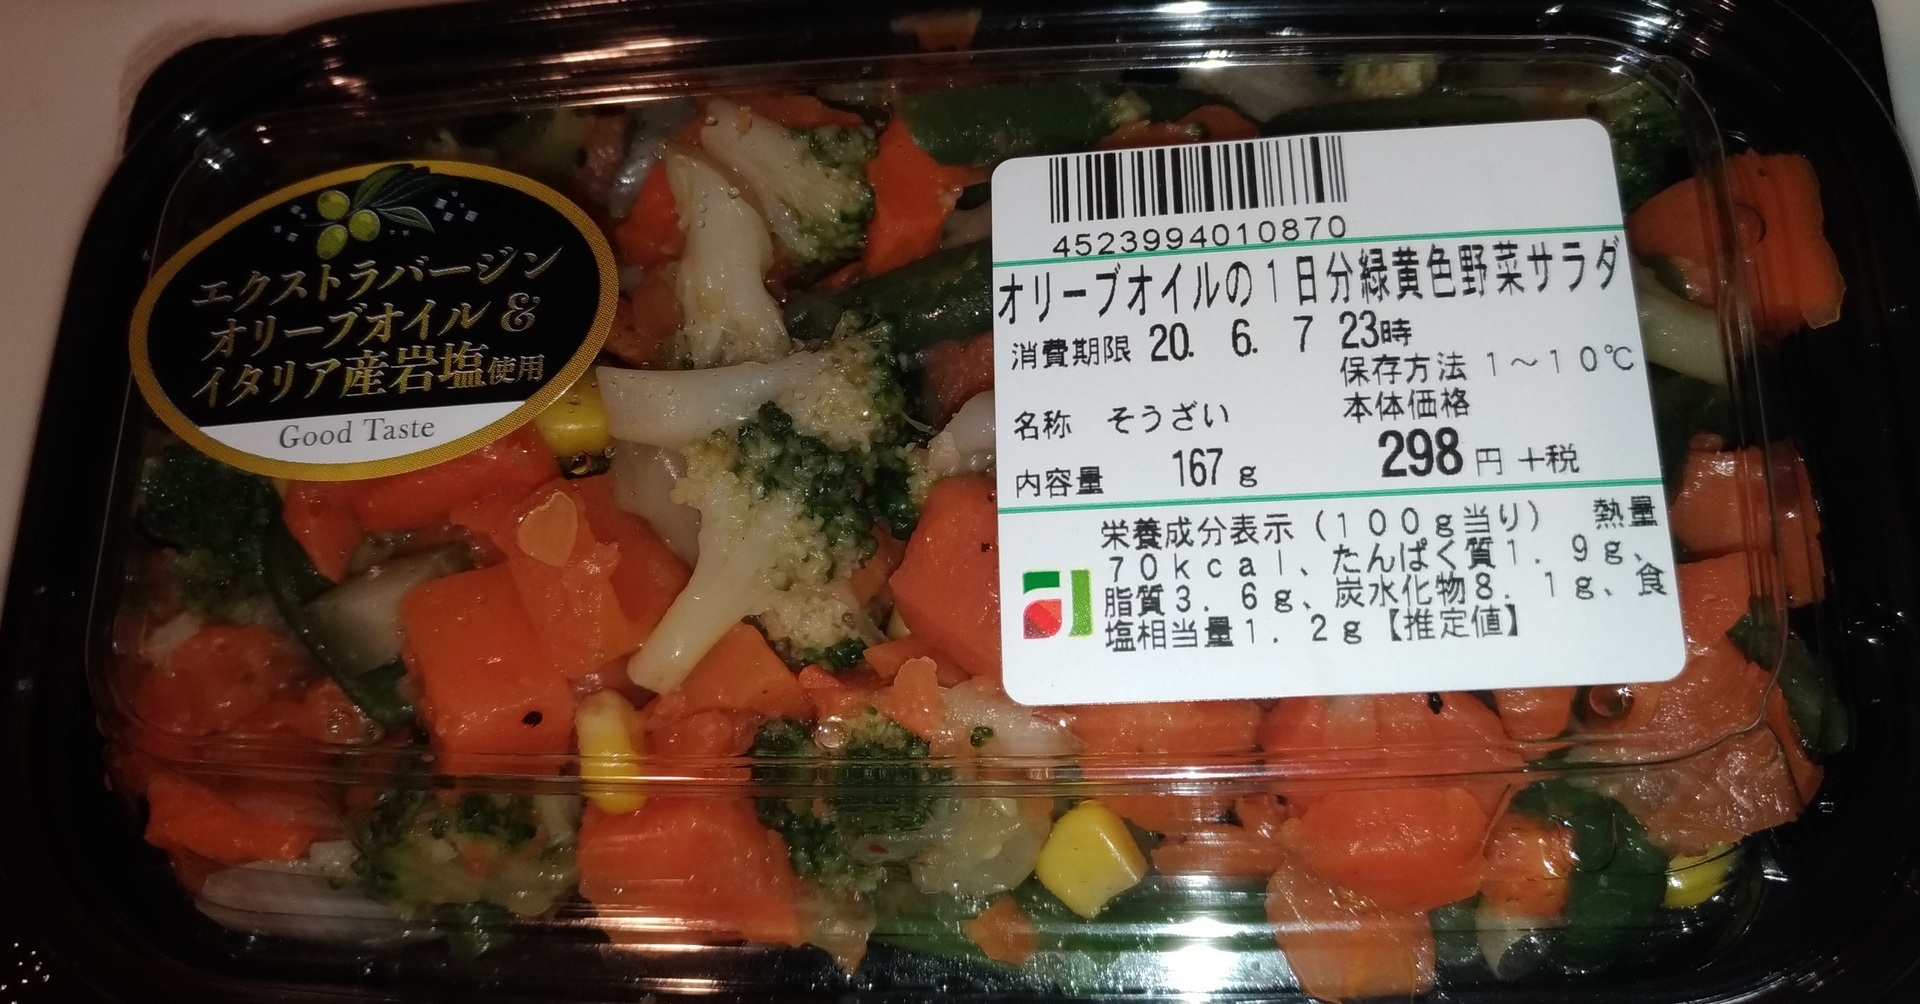 ライフ サラダ栄養オリーブの1日分緑黄色野菜サラダ美味しそう スーパーライフ 大阪おすすめお惣菜野菜をブログでポイントも